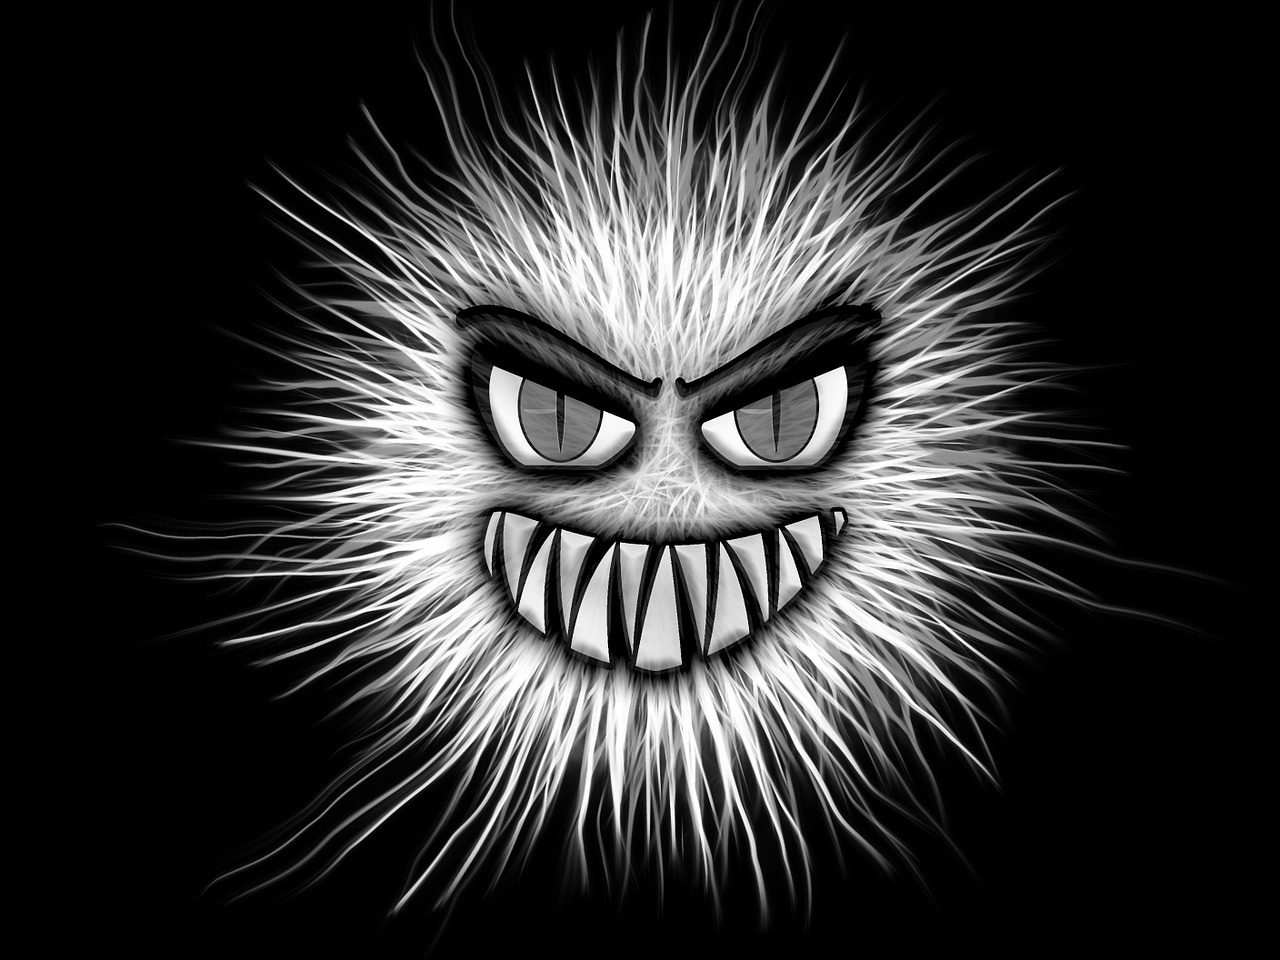 Free monster virus black and white illustration